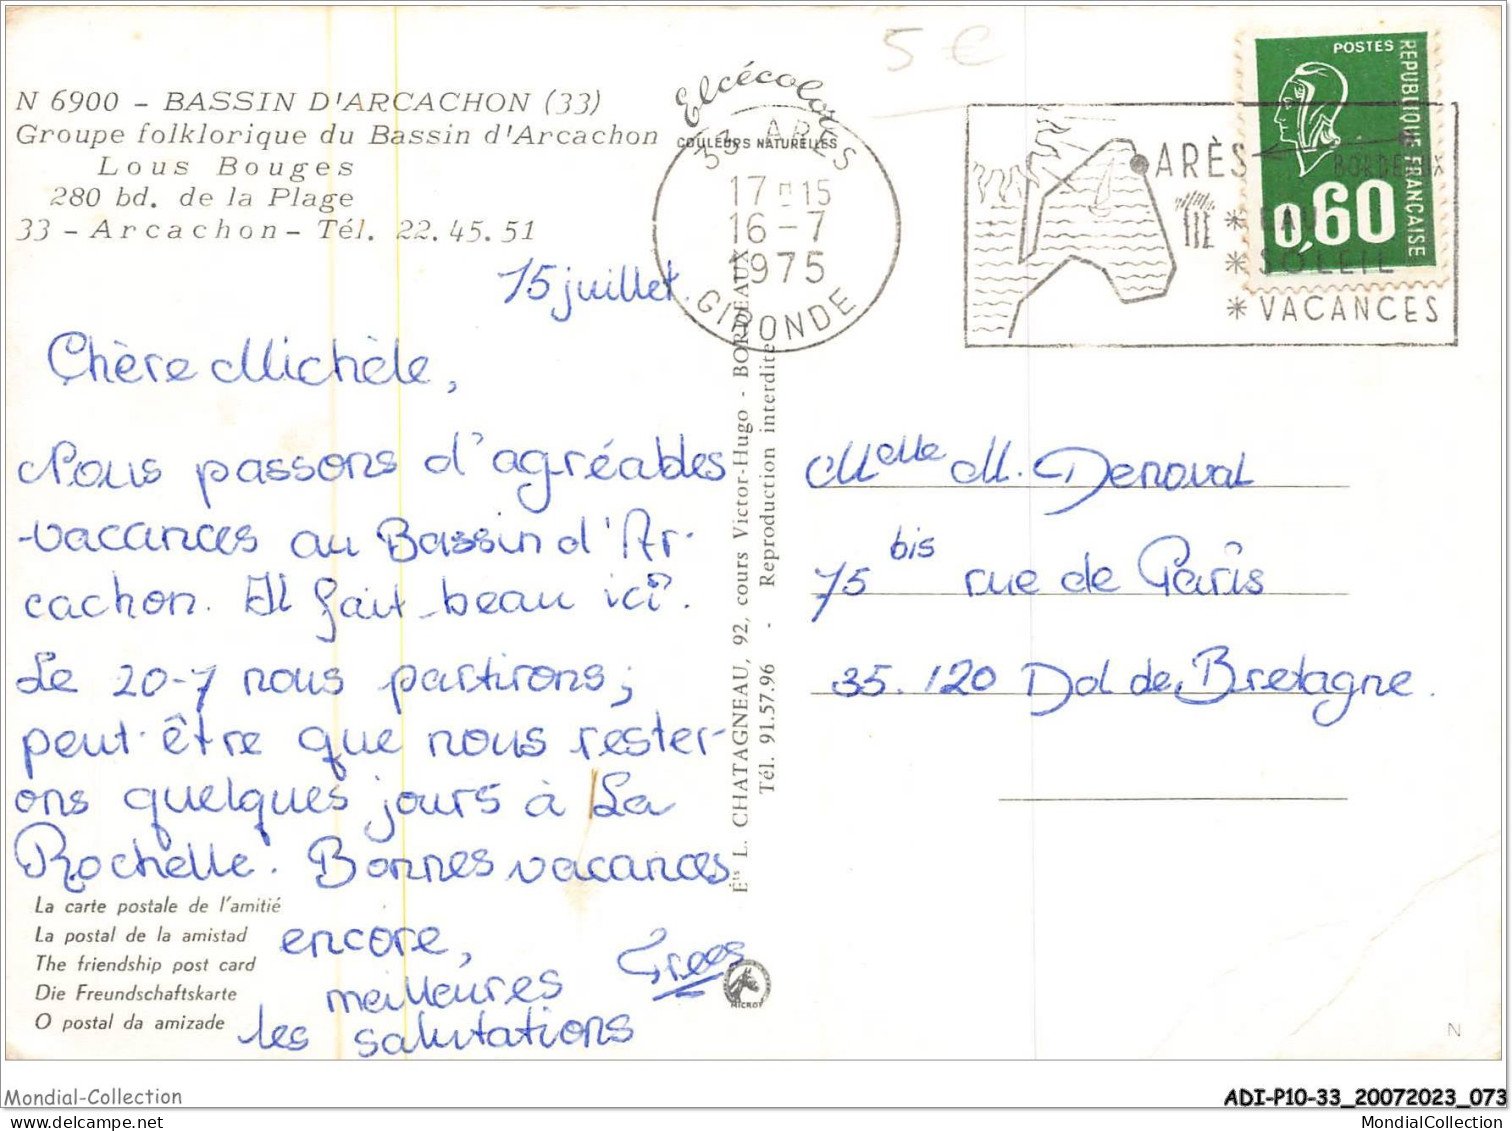 ADIP10-33-0886 - Bassin D'ARCACHON - Groupe Folklorique Du Bassin D'arcachon - Lous Bouges  - Arcachon